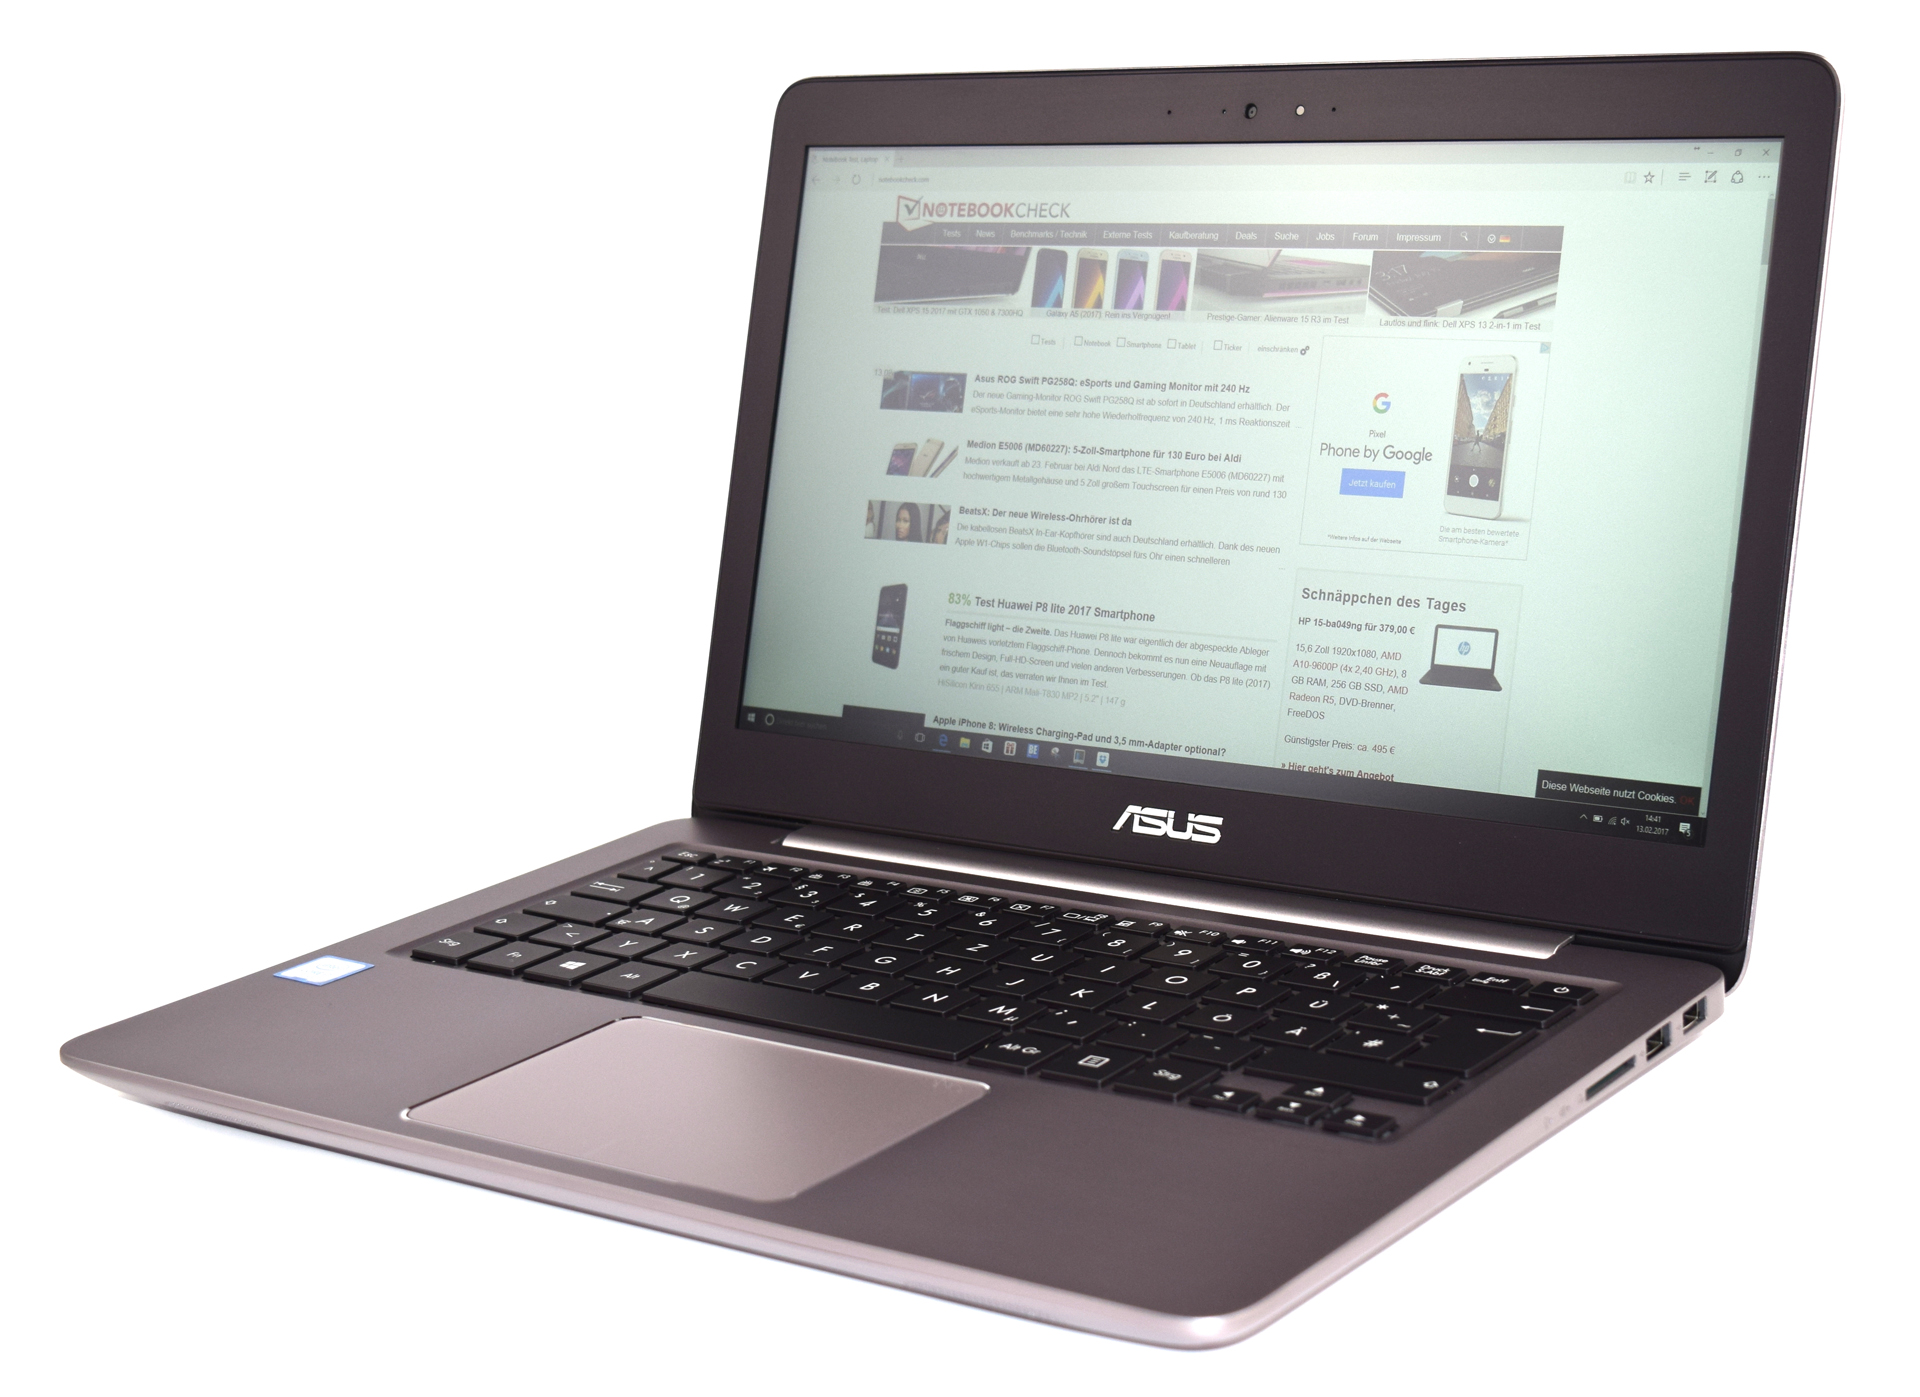 Asus ZenBook UX310UA (7500U, Full HD) Laptop Review 